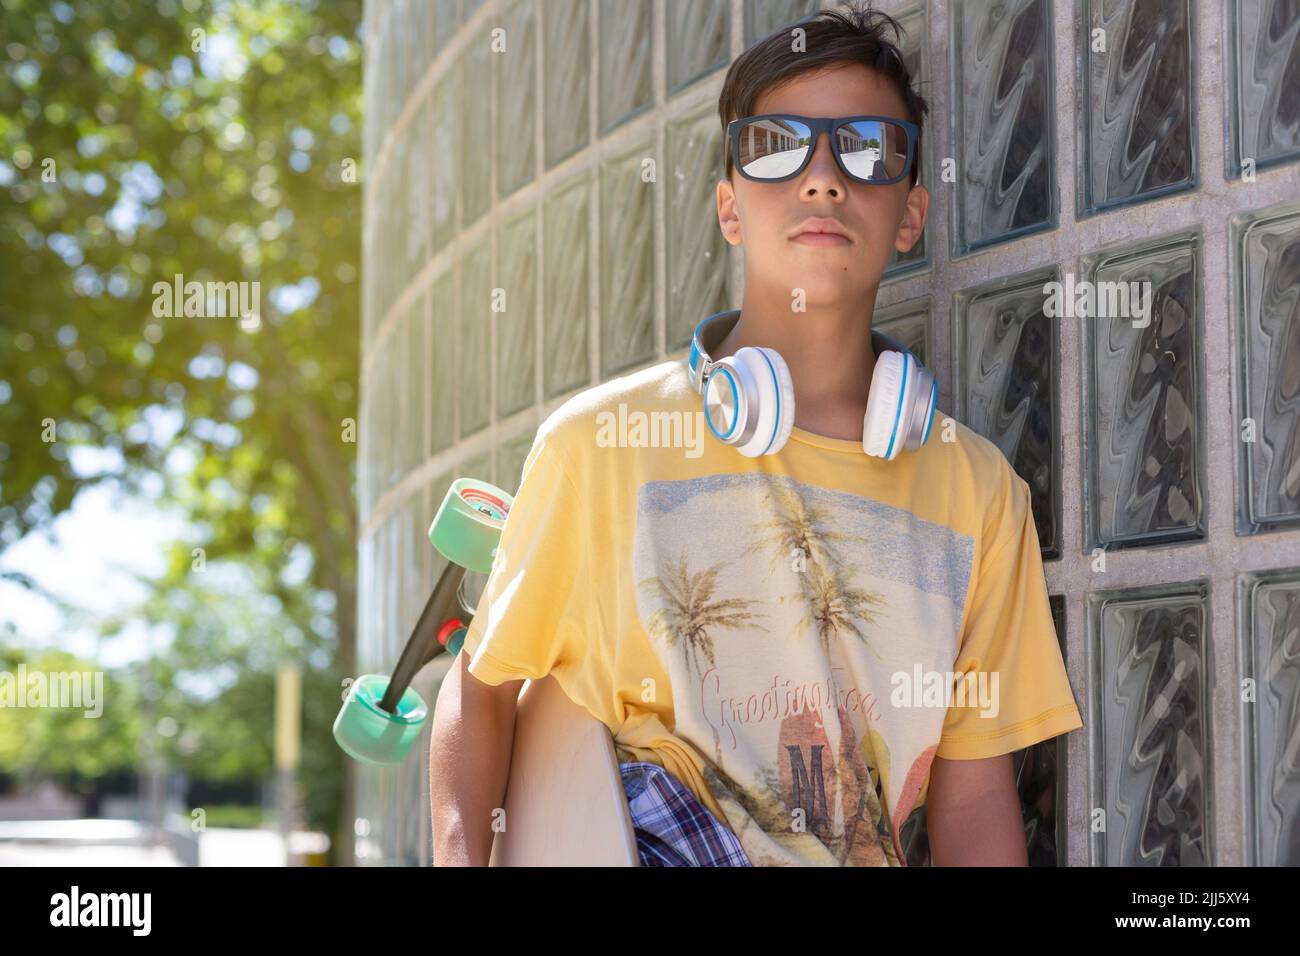 Portrait d'un garçon de patineuse adolescent du caucase avec des lunettes de soleil à l'extérieur. Concept FreeStyle. Espace pour le texte. Banque D'Images